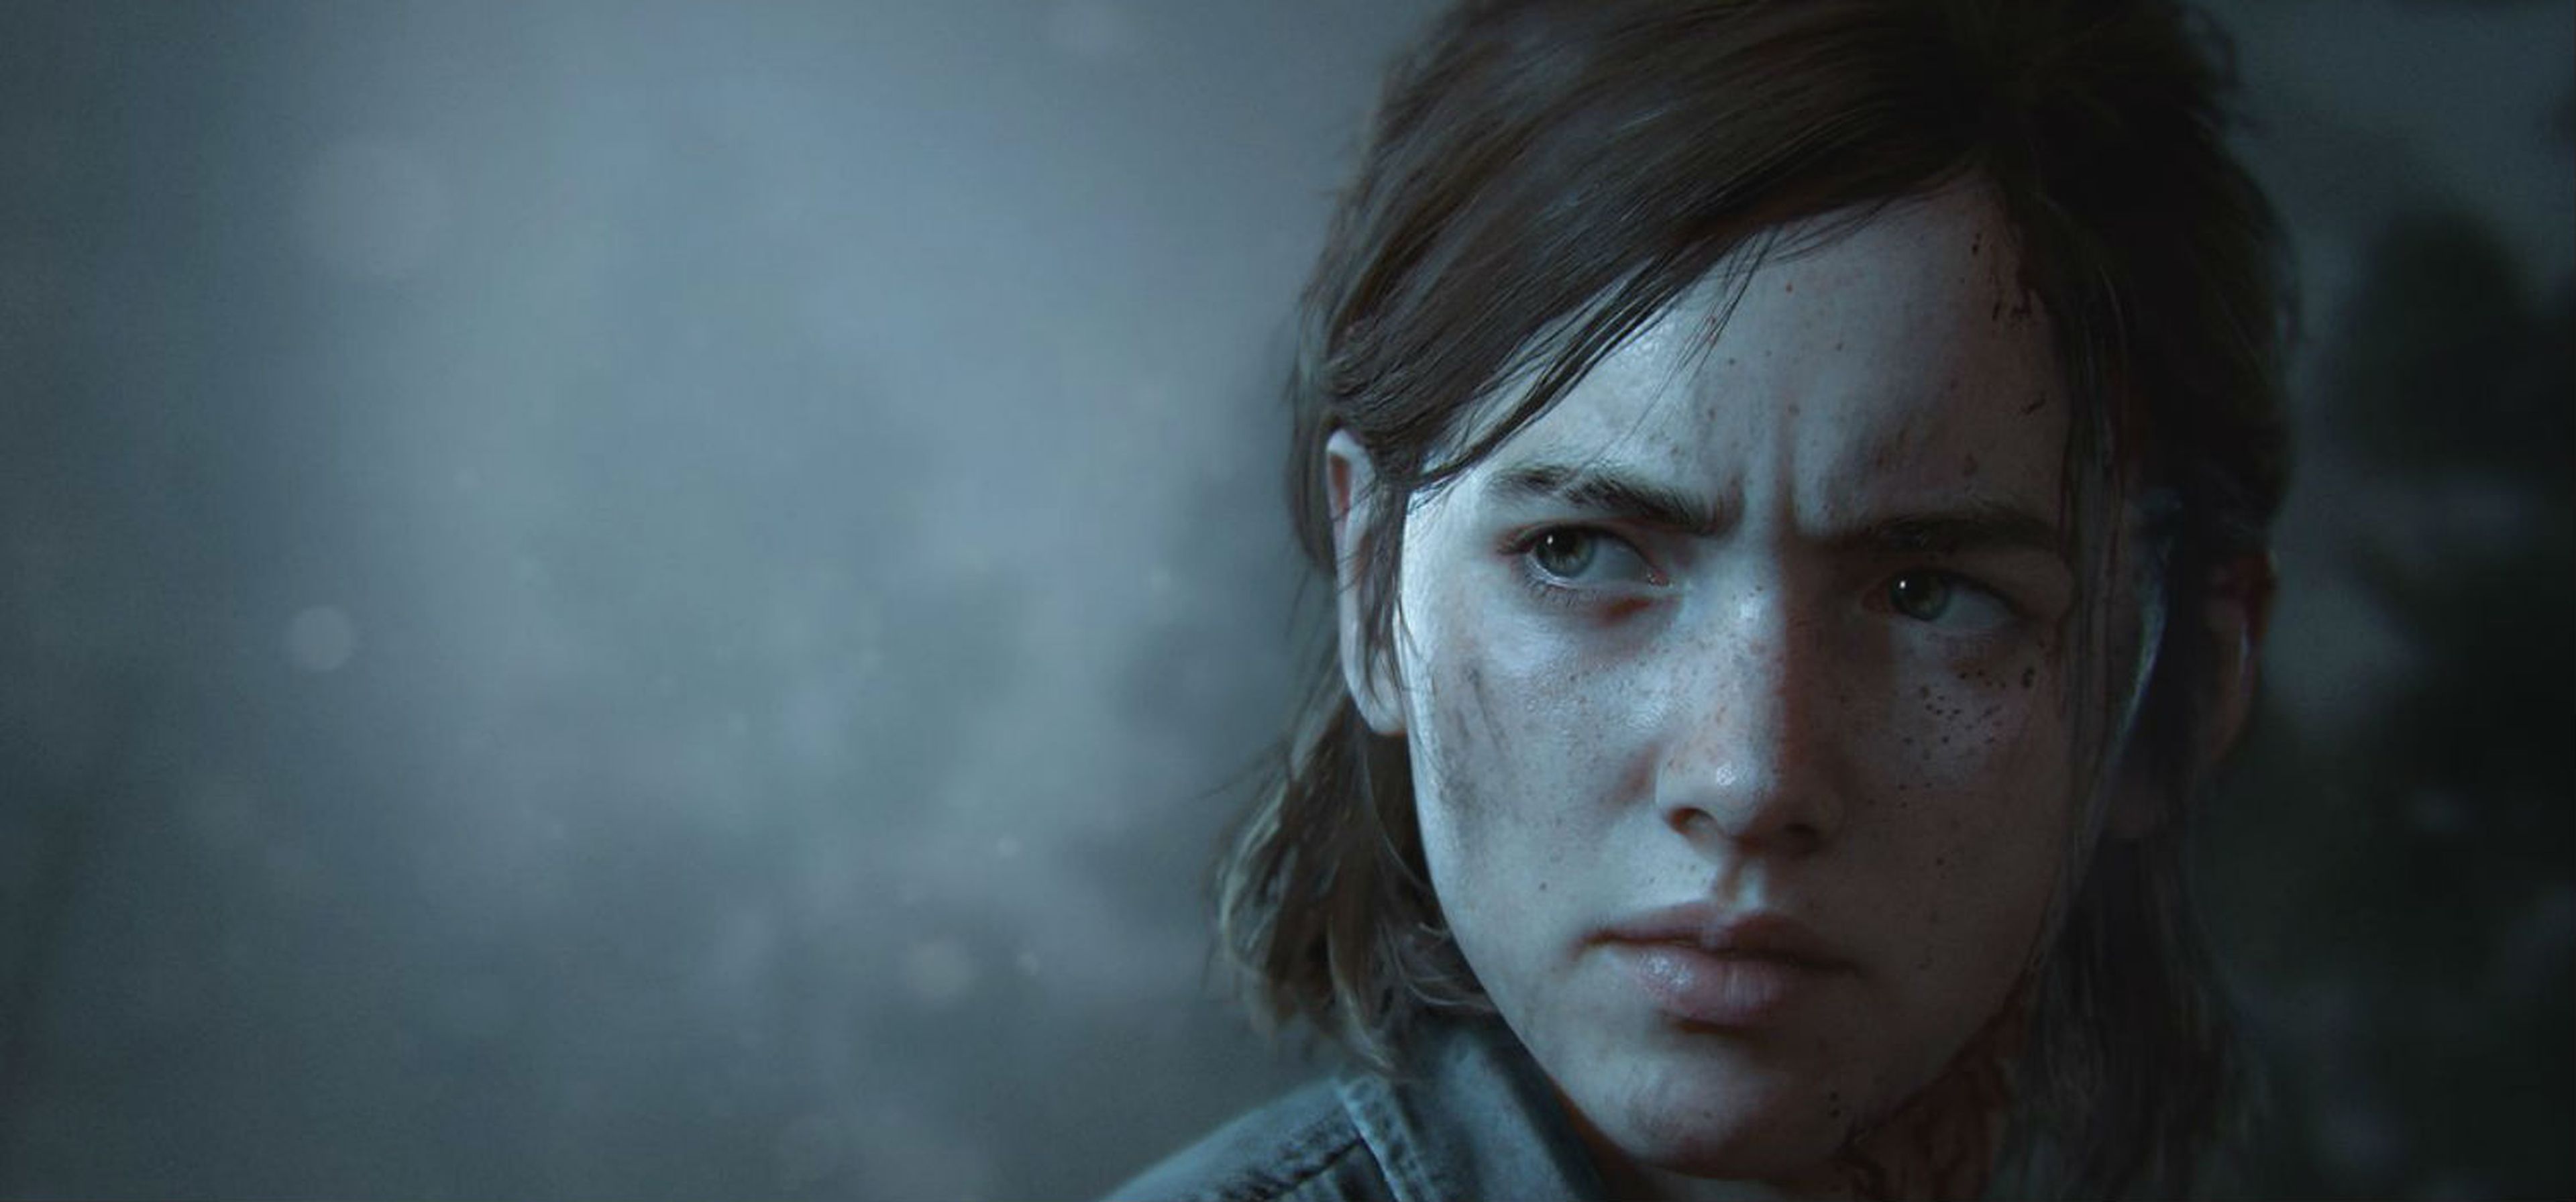 El beso de Ellie en The Last of Us 2 y otras relaciones en videojuegos